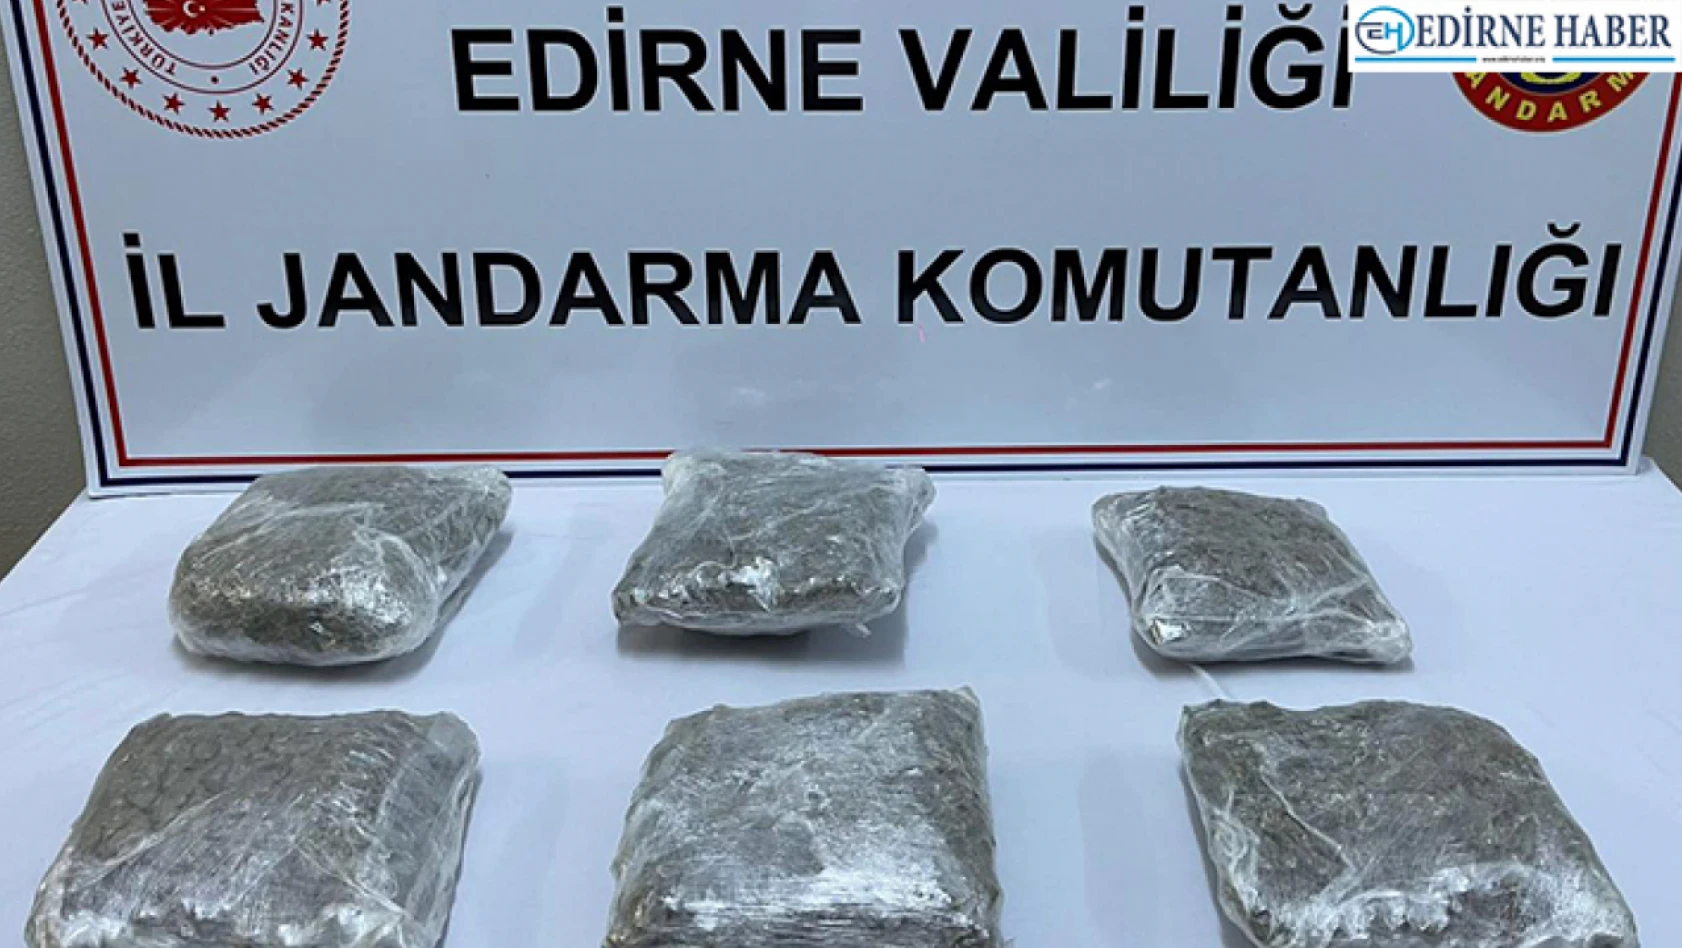 Edirne'deki uyuşturucu operasyonlarında 5 zanlı yakalandı, 26 kişiye adli işlem yapıldı